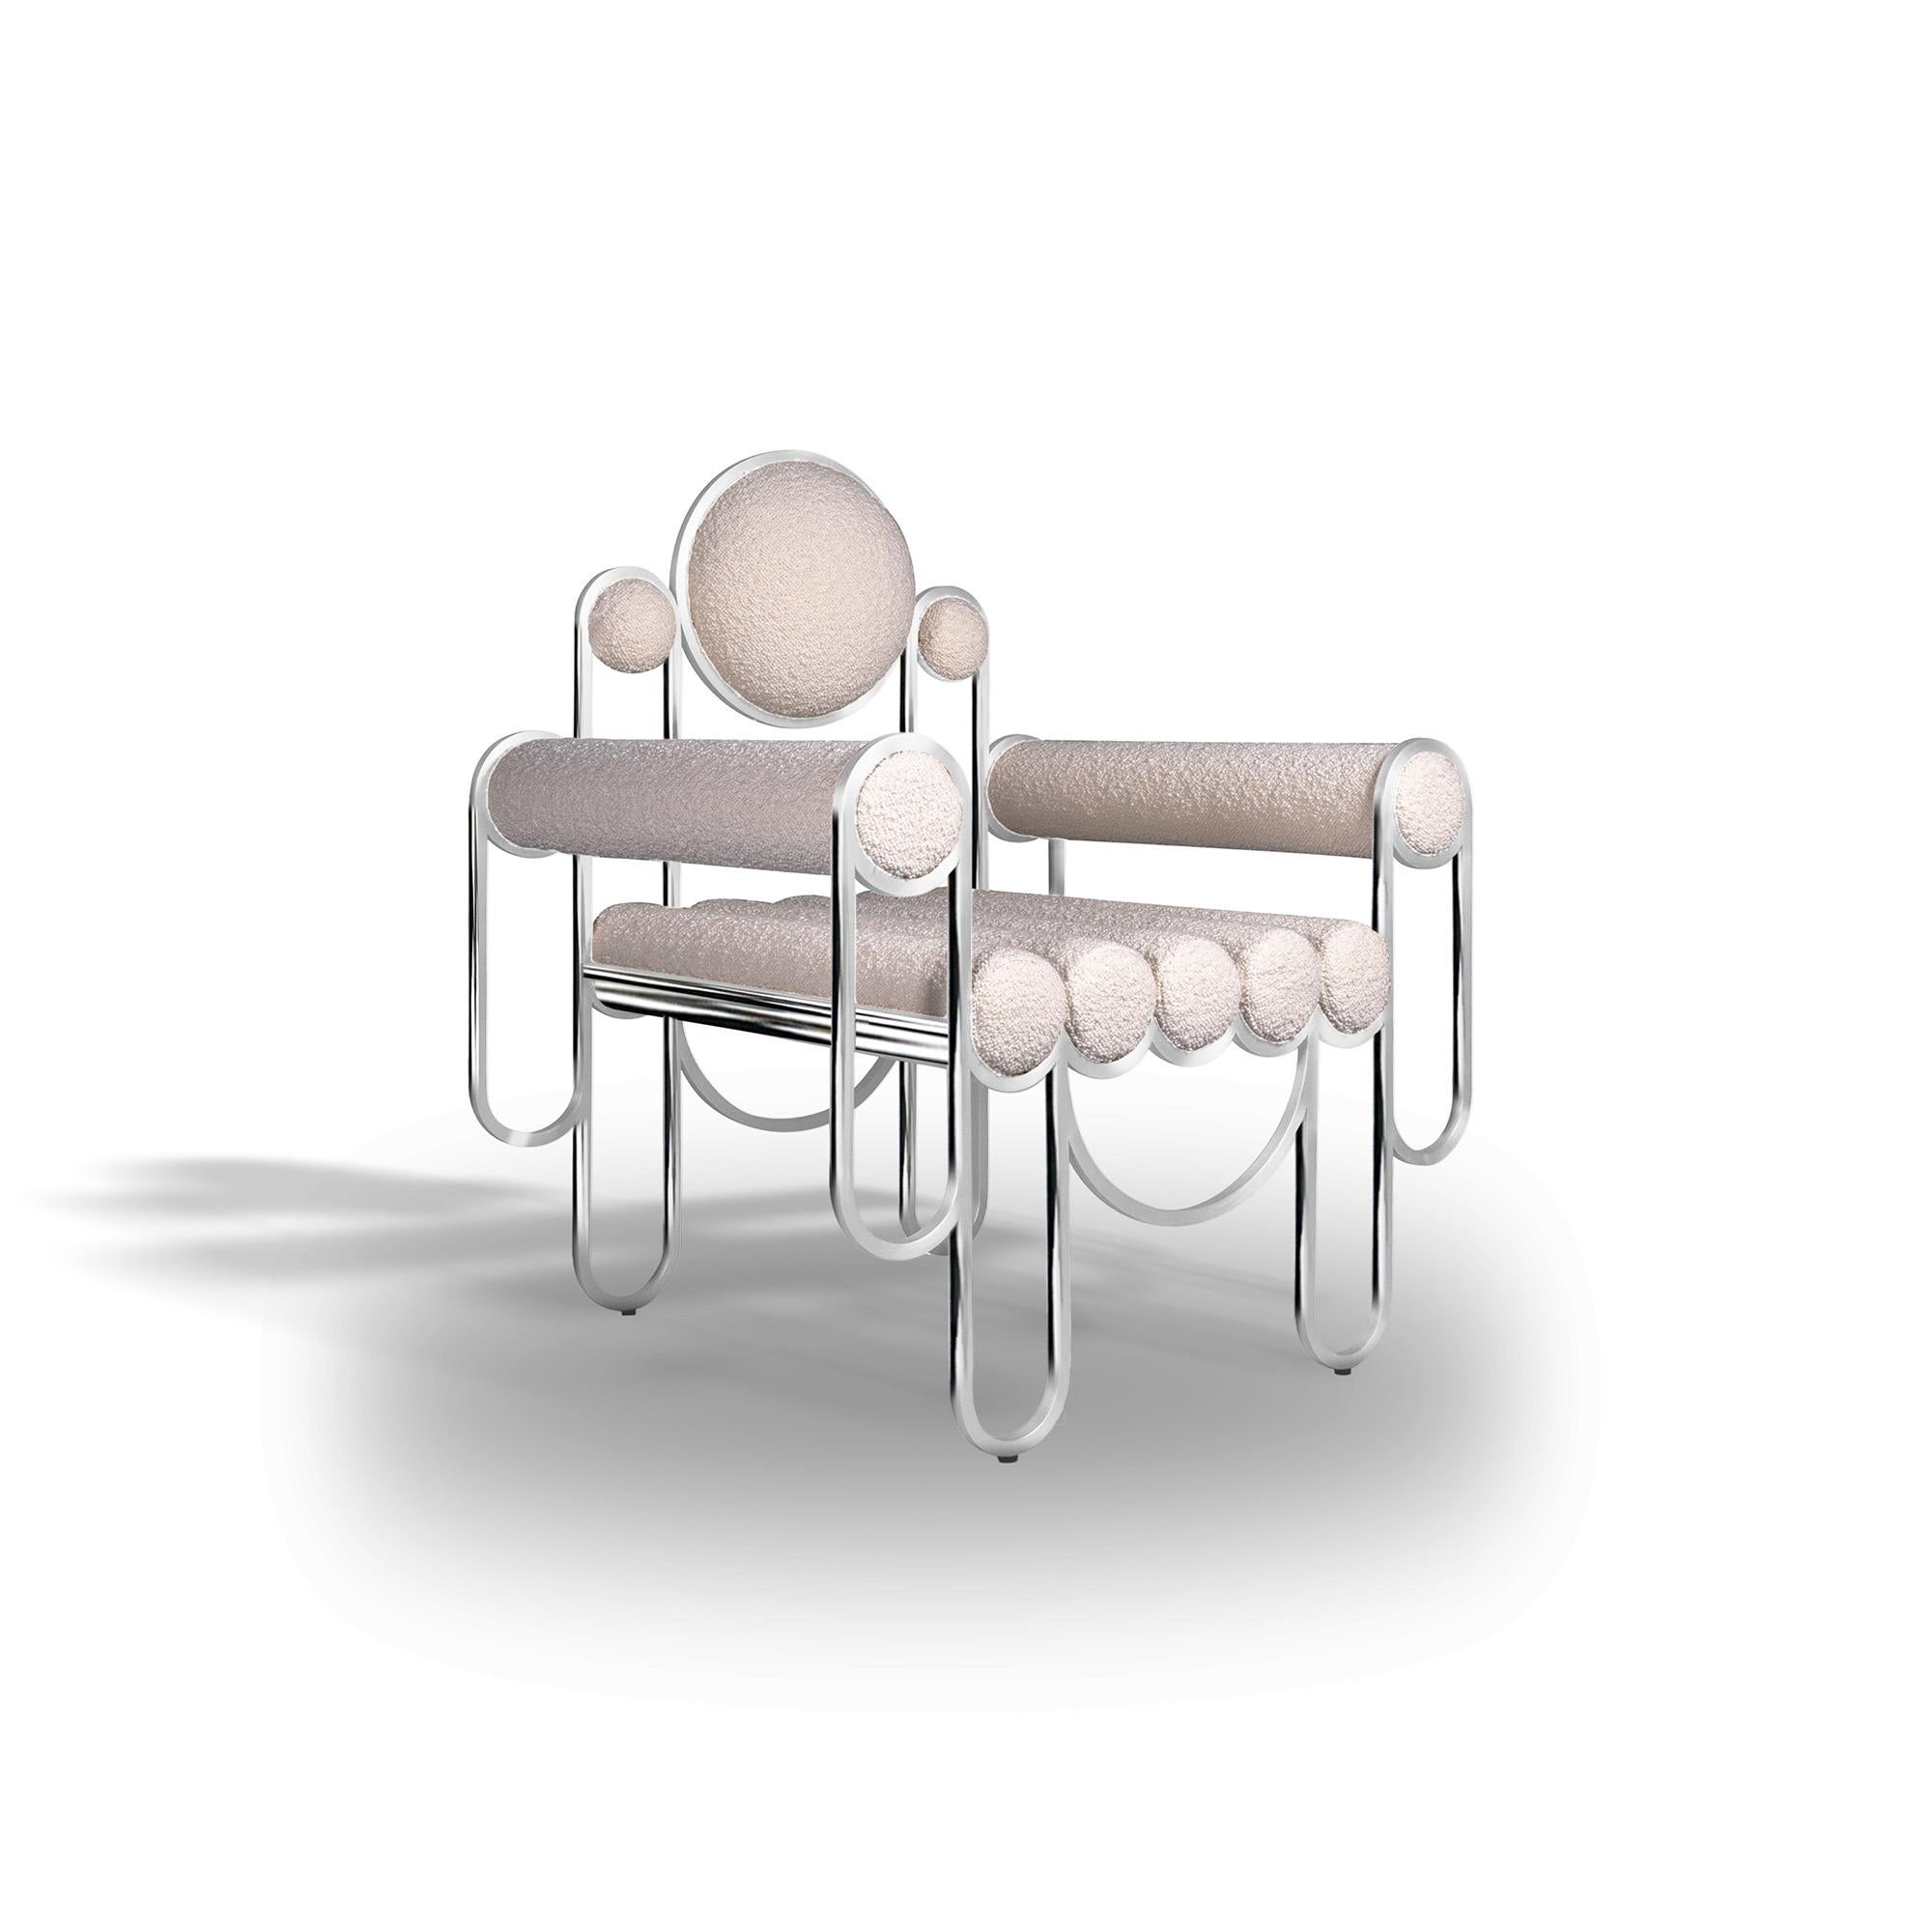 Le fauteuil Apollo poursuit l'évolution de la famille de design Apollo, en ajoutant un élégant dossier au fauteuil, présentant une autre combinaison contrastée de travail de ferronnerie complexe et de tissu d'ameublement confortable. Le dossier est